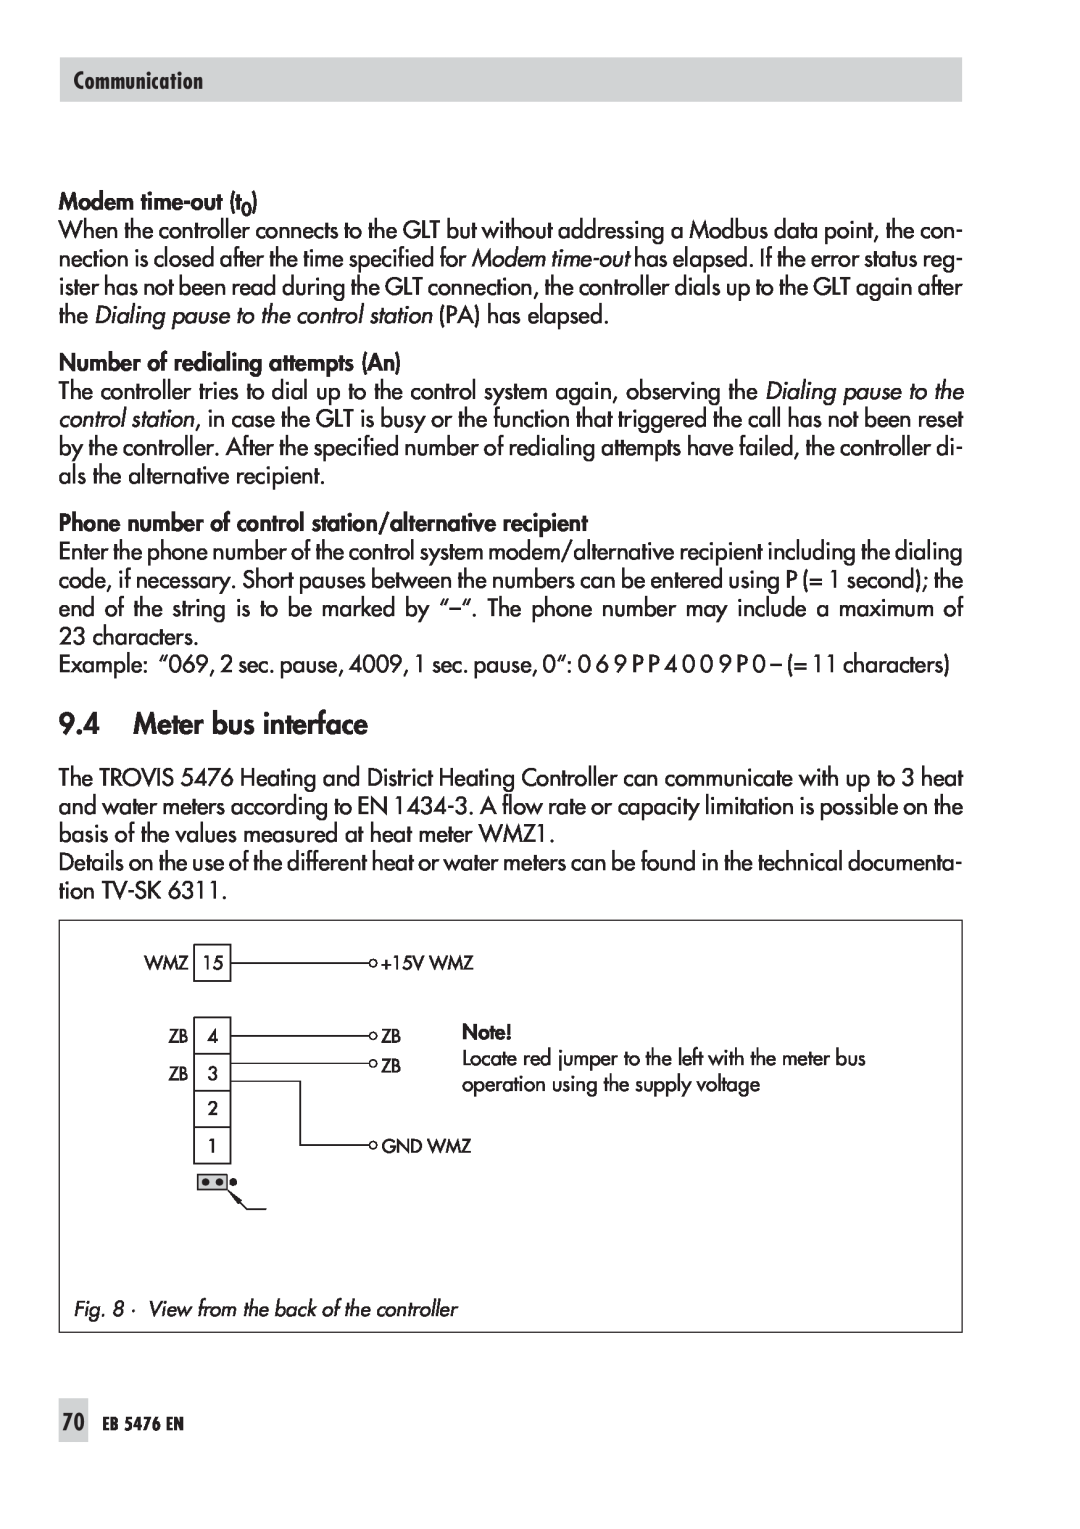 Samson 5476 manual 9.4Meter bus interface, Communication 